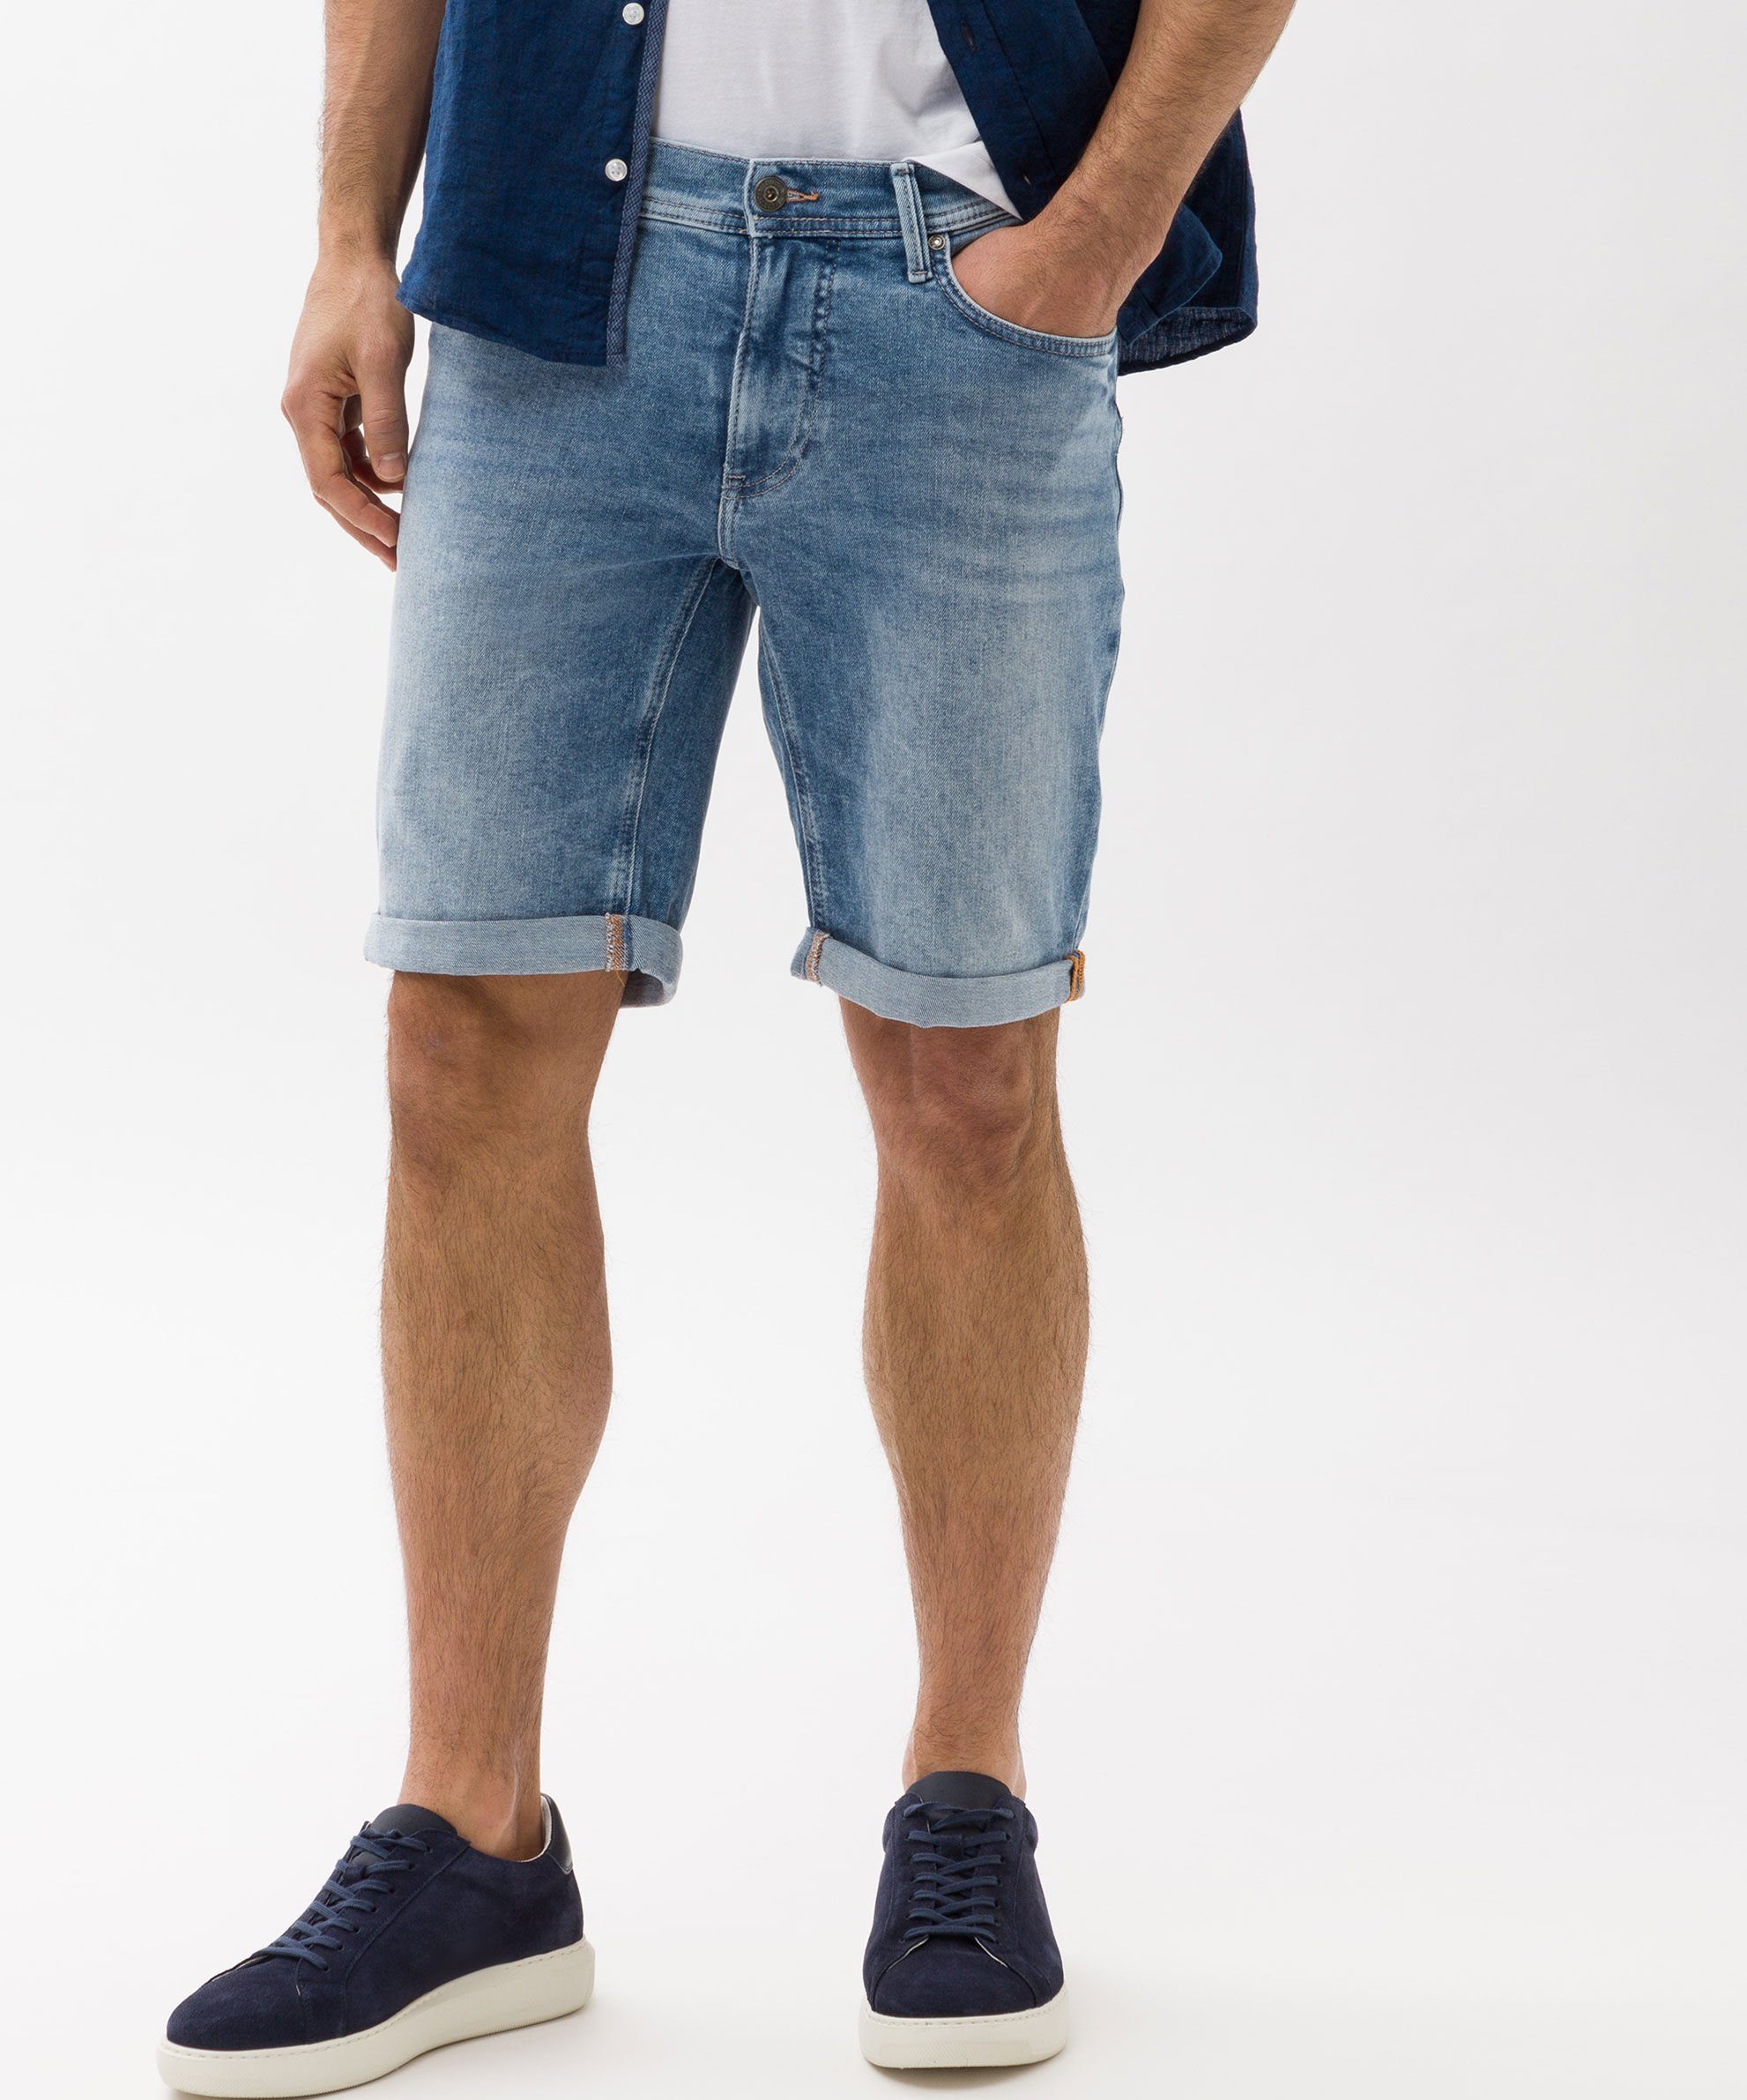 Brax Jeansshorts Chris Vintage Flex Denim Shorts, elastisch hellblau